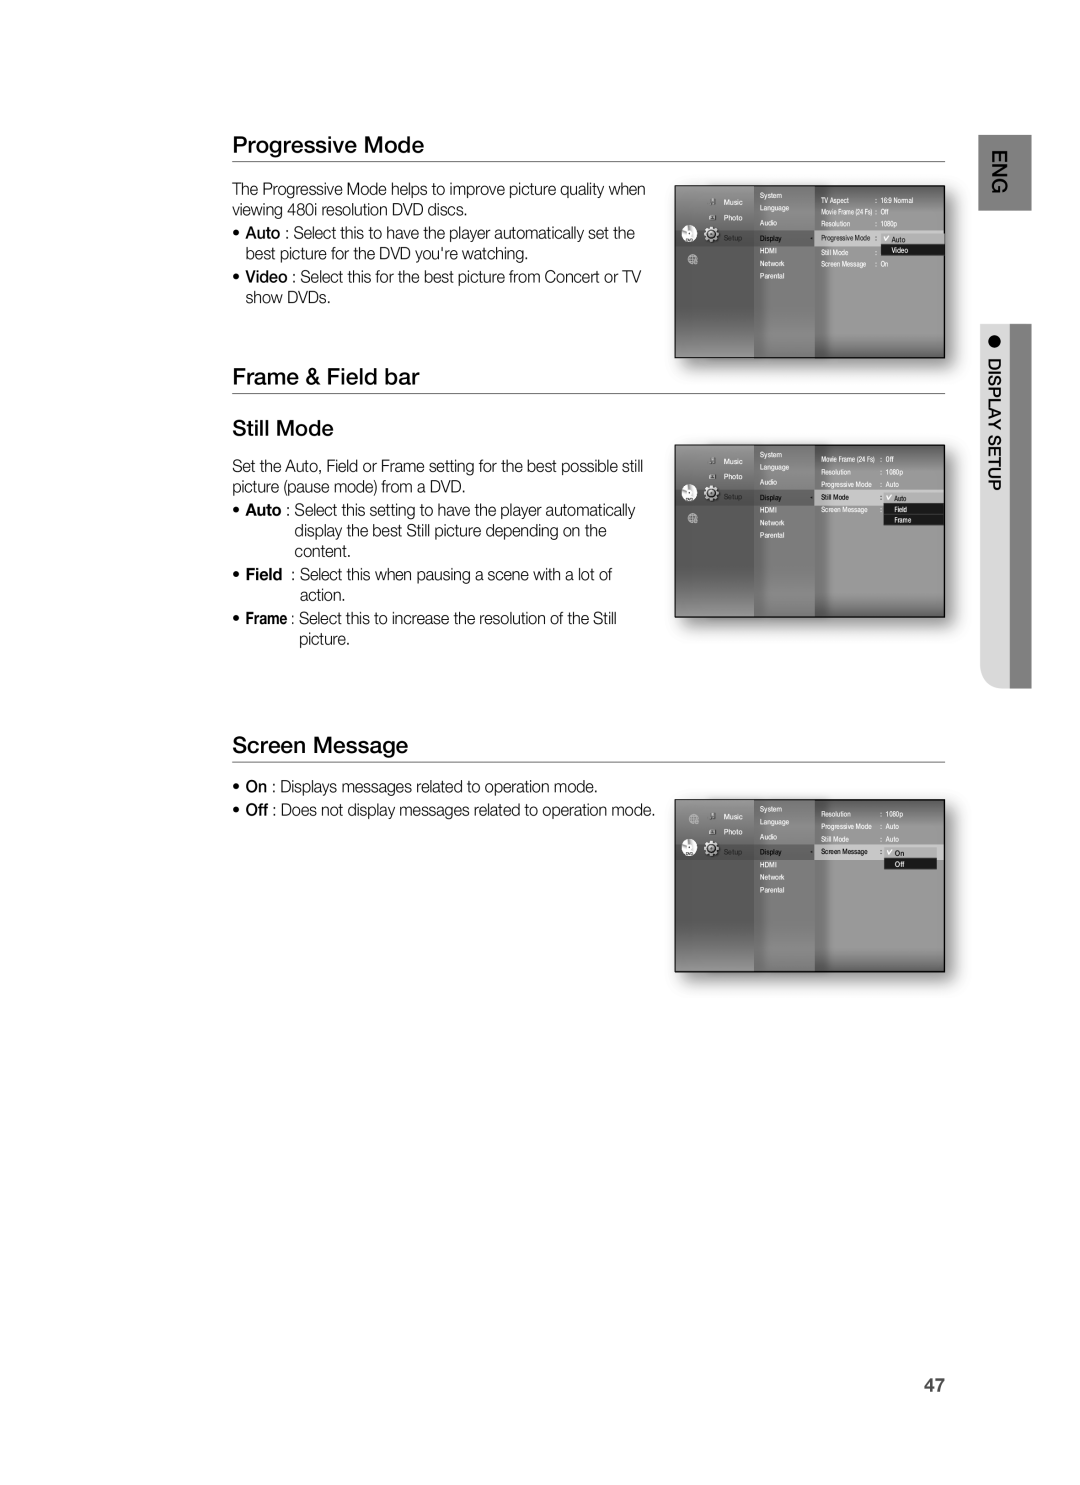 Samsung HT-BD3252A Progressive Mode, Frame & Field bar, Screen Message, Still Mode, viewing 480i resolution DVD discs 